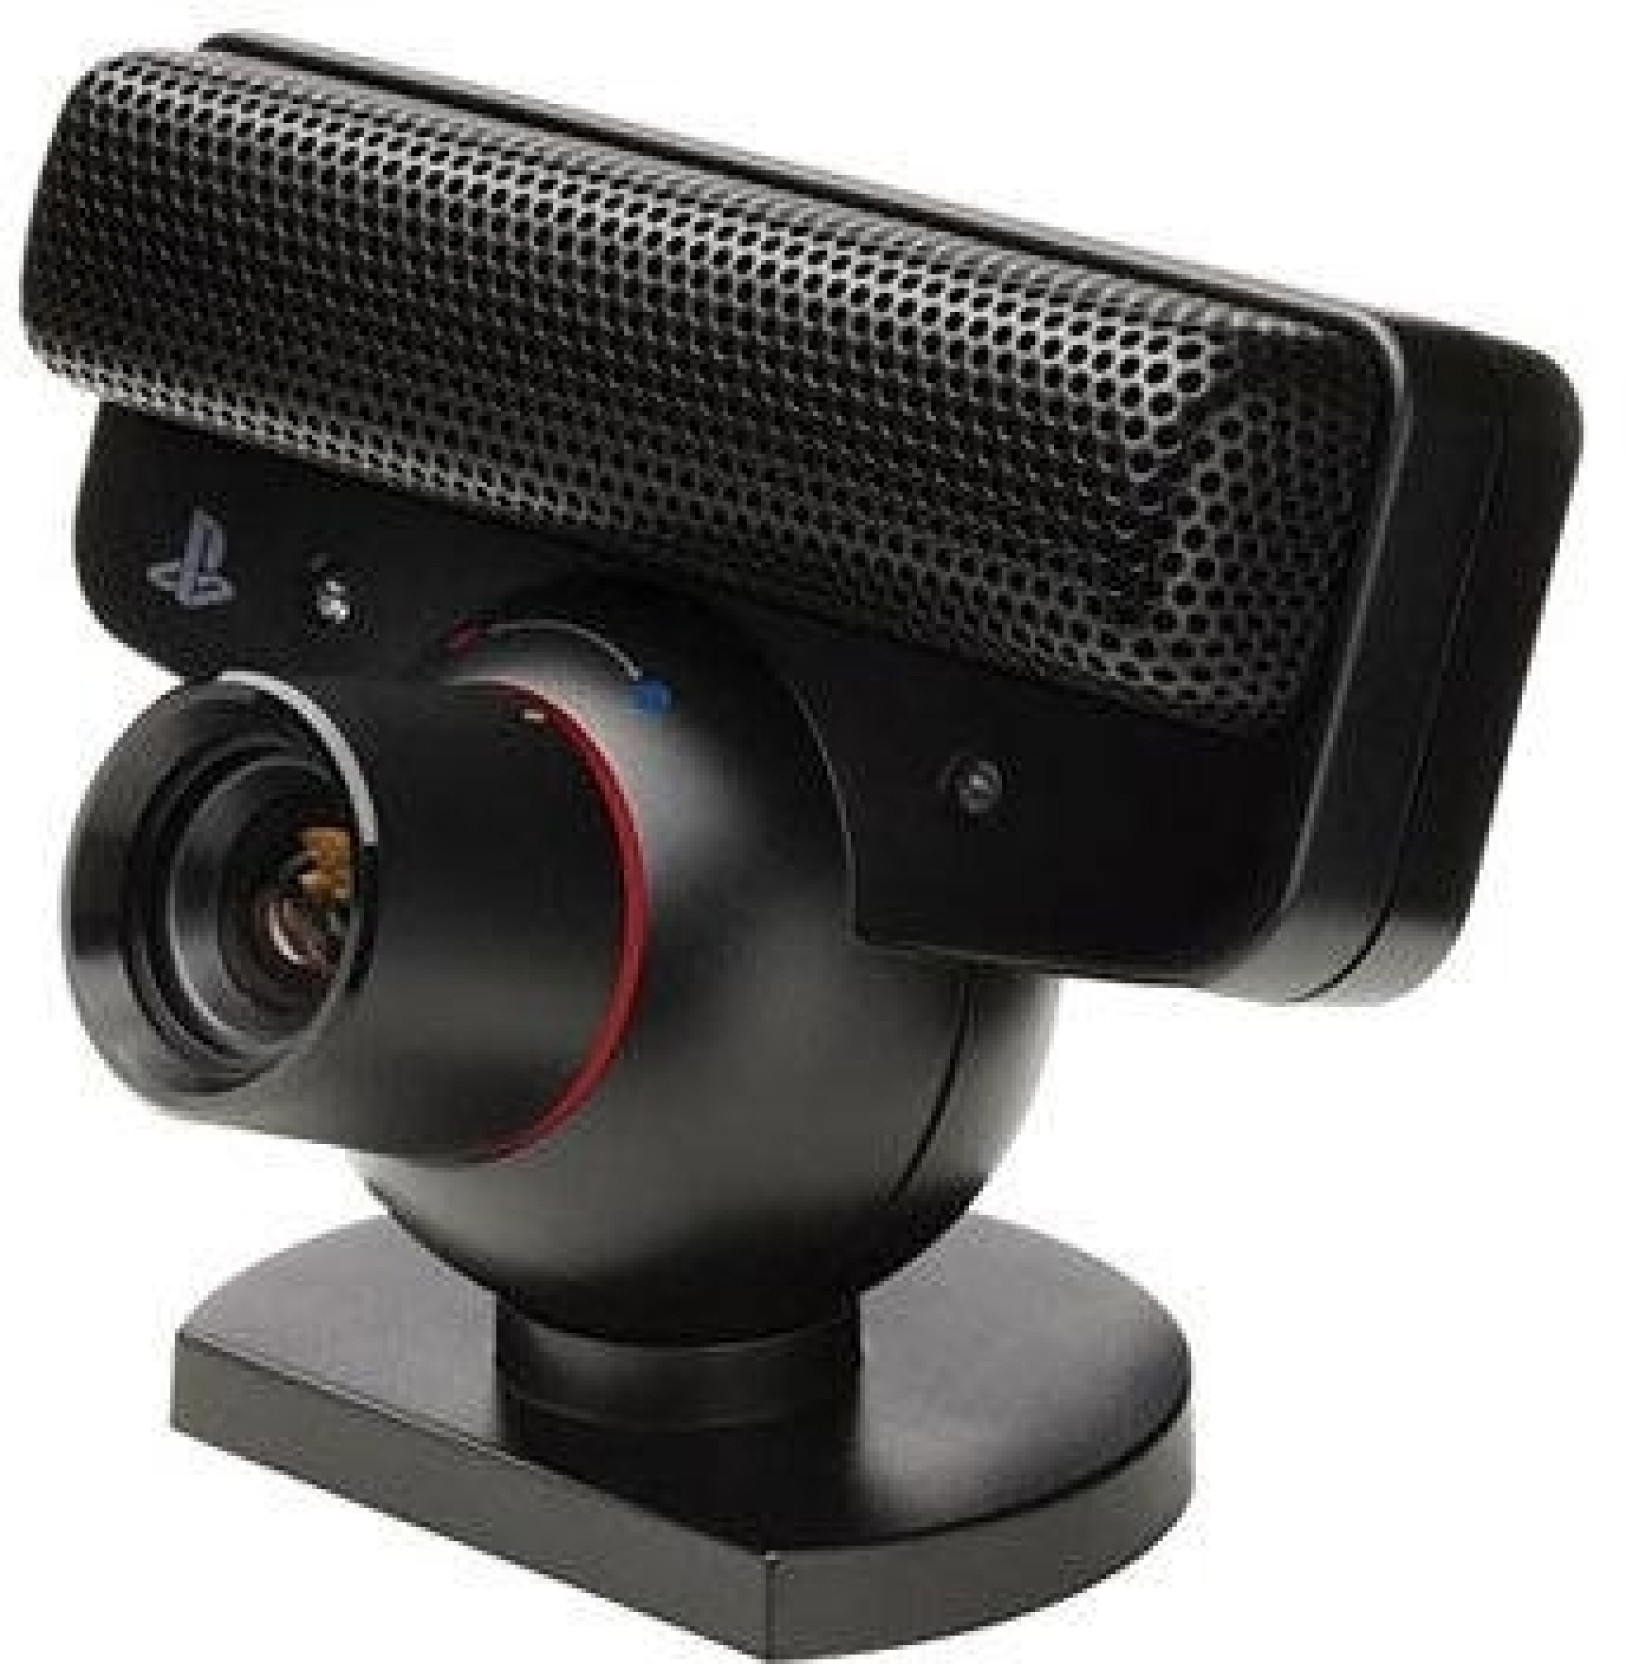 Sony PS3 Eye Camera - Sony : Flipkart.com